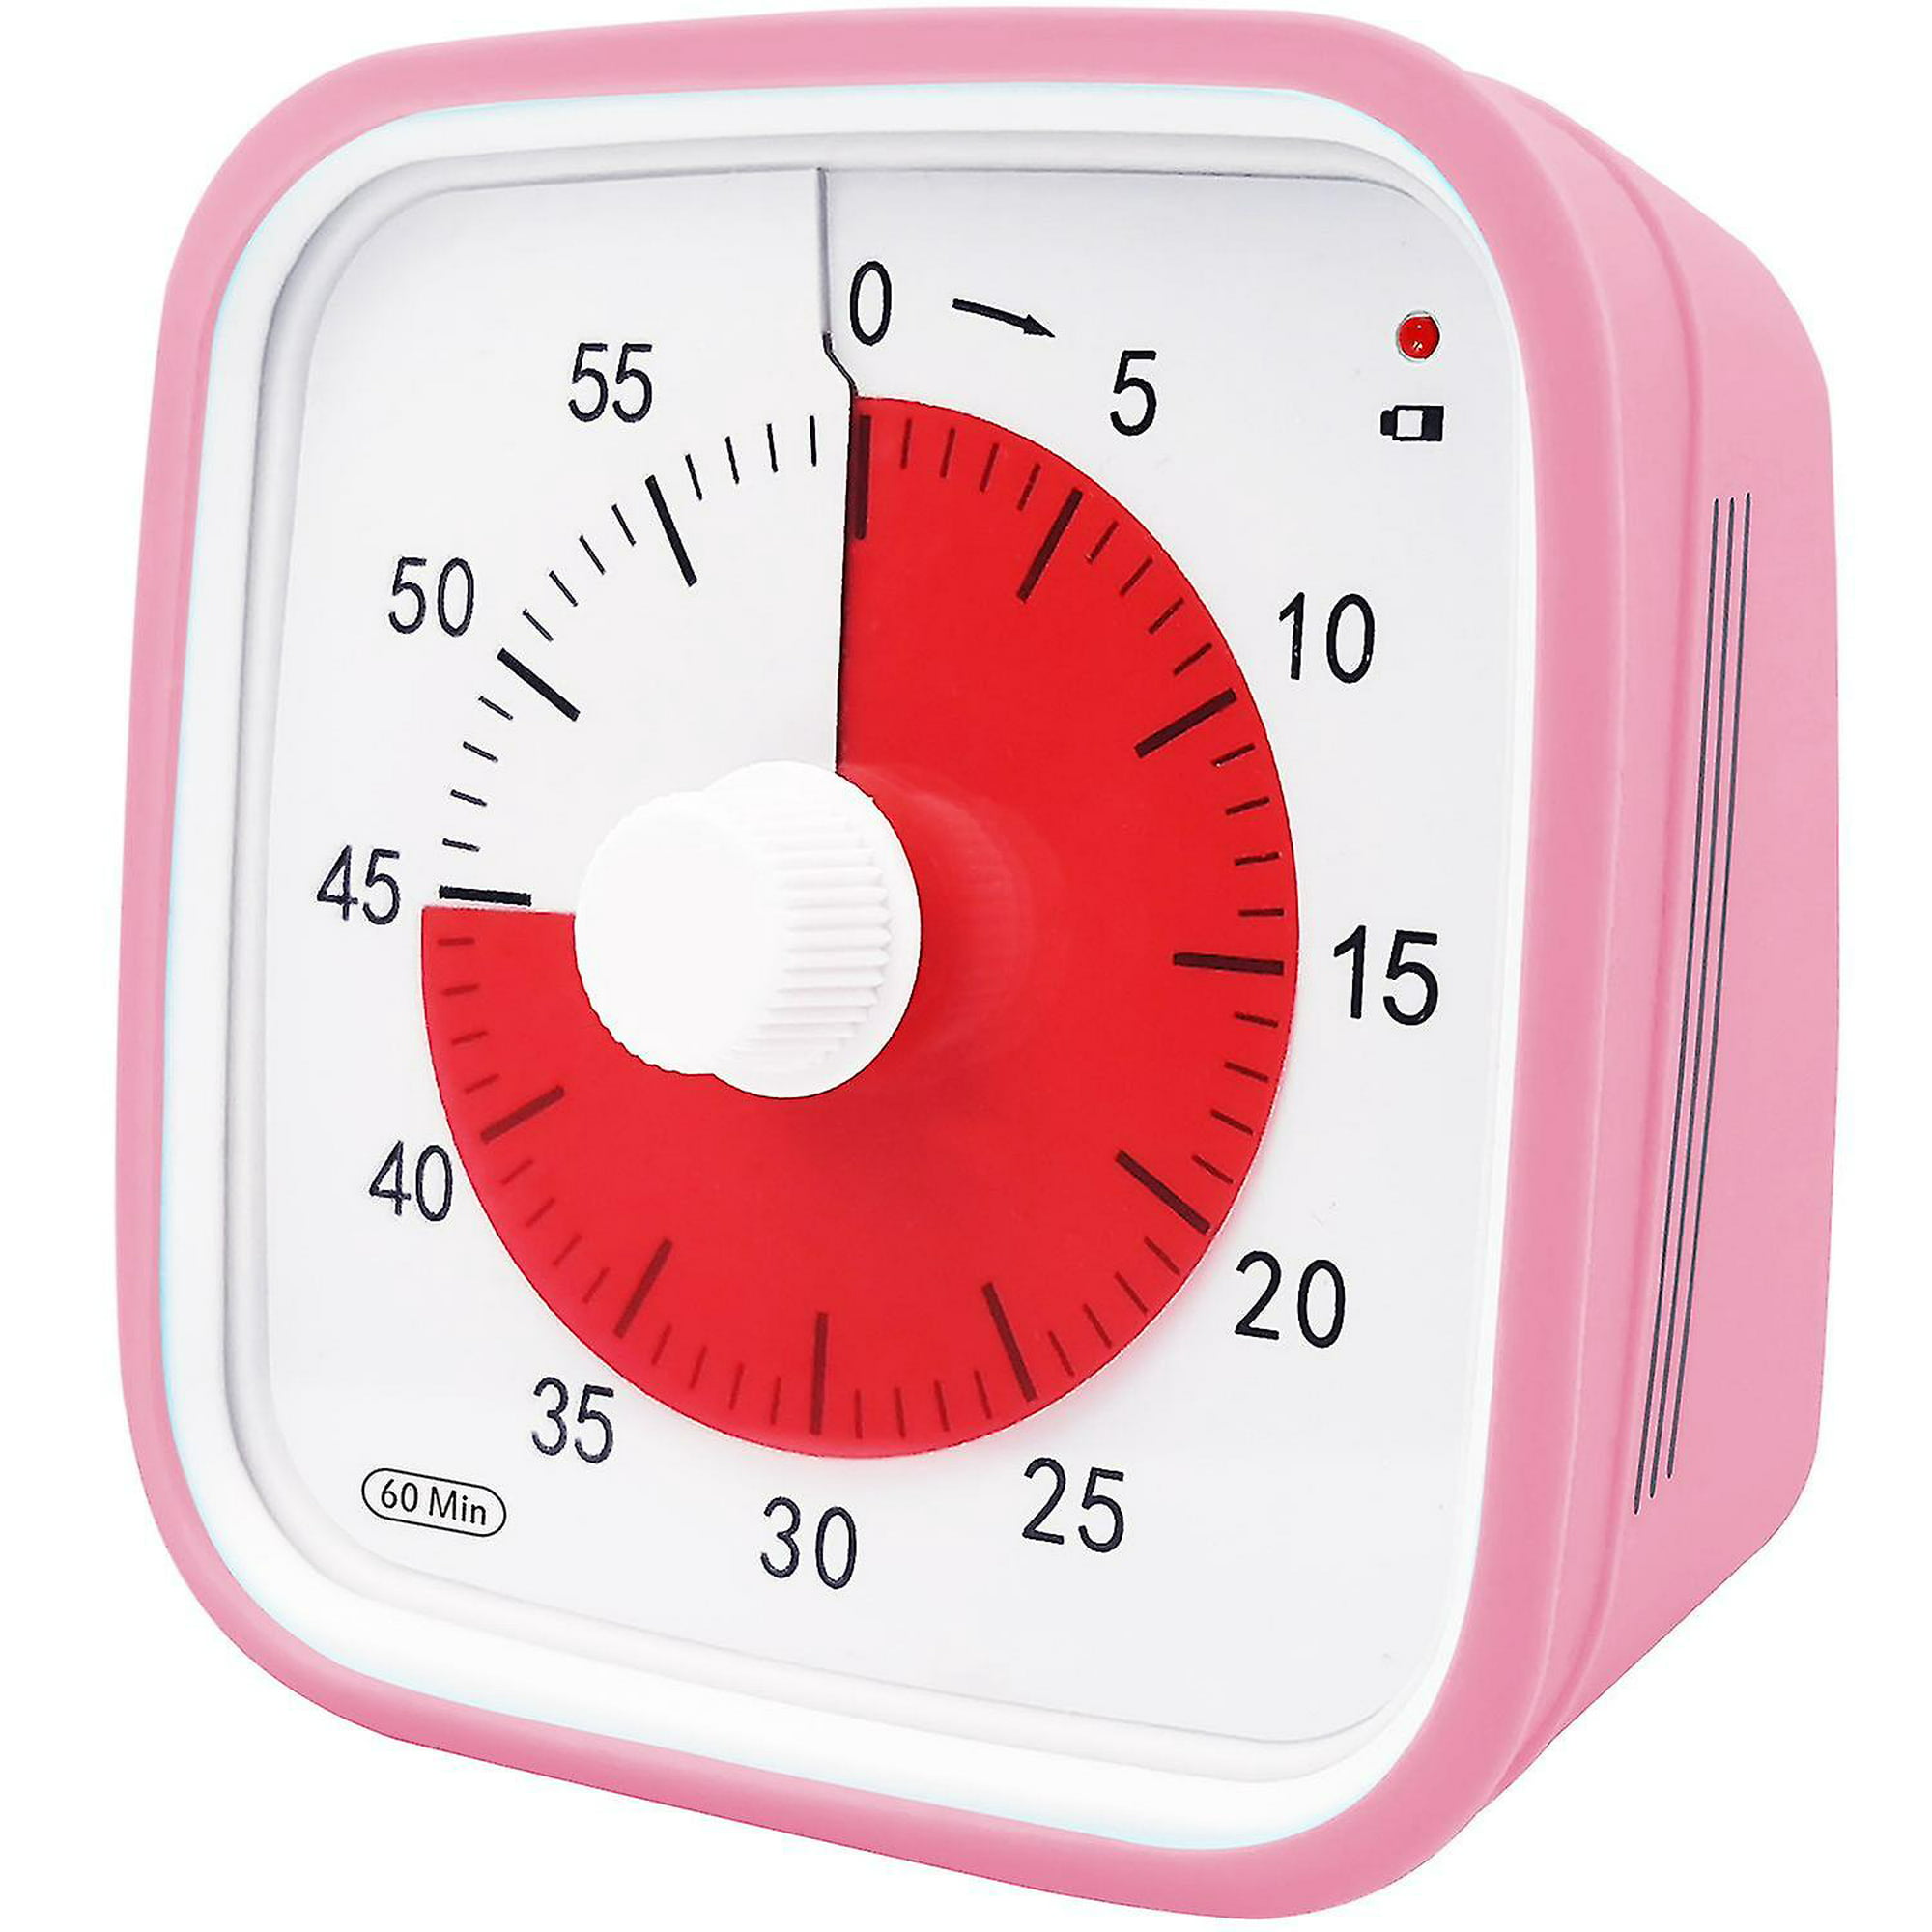 Temporizador visual de 60 minutos Reloj de cuenta regresiva para el aula  para niños Adultos Herramienta de gestión del tiempo para enseñar  temporizador de cocina Home Office School